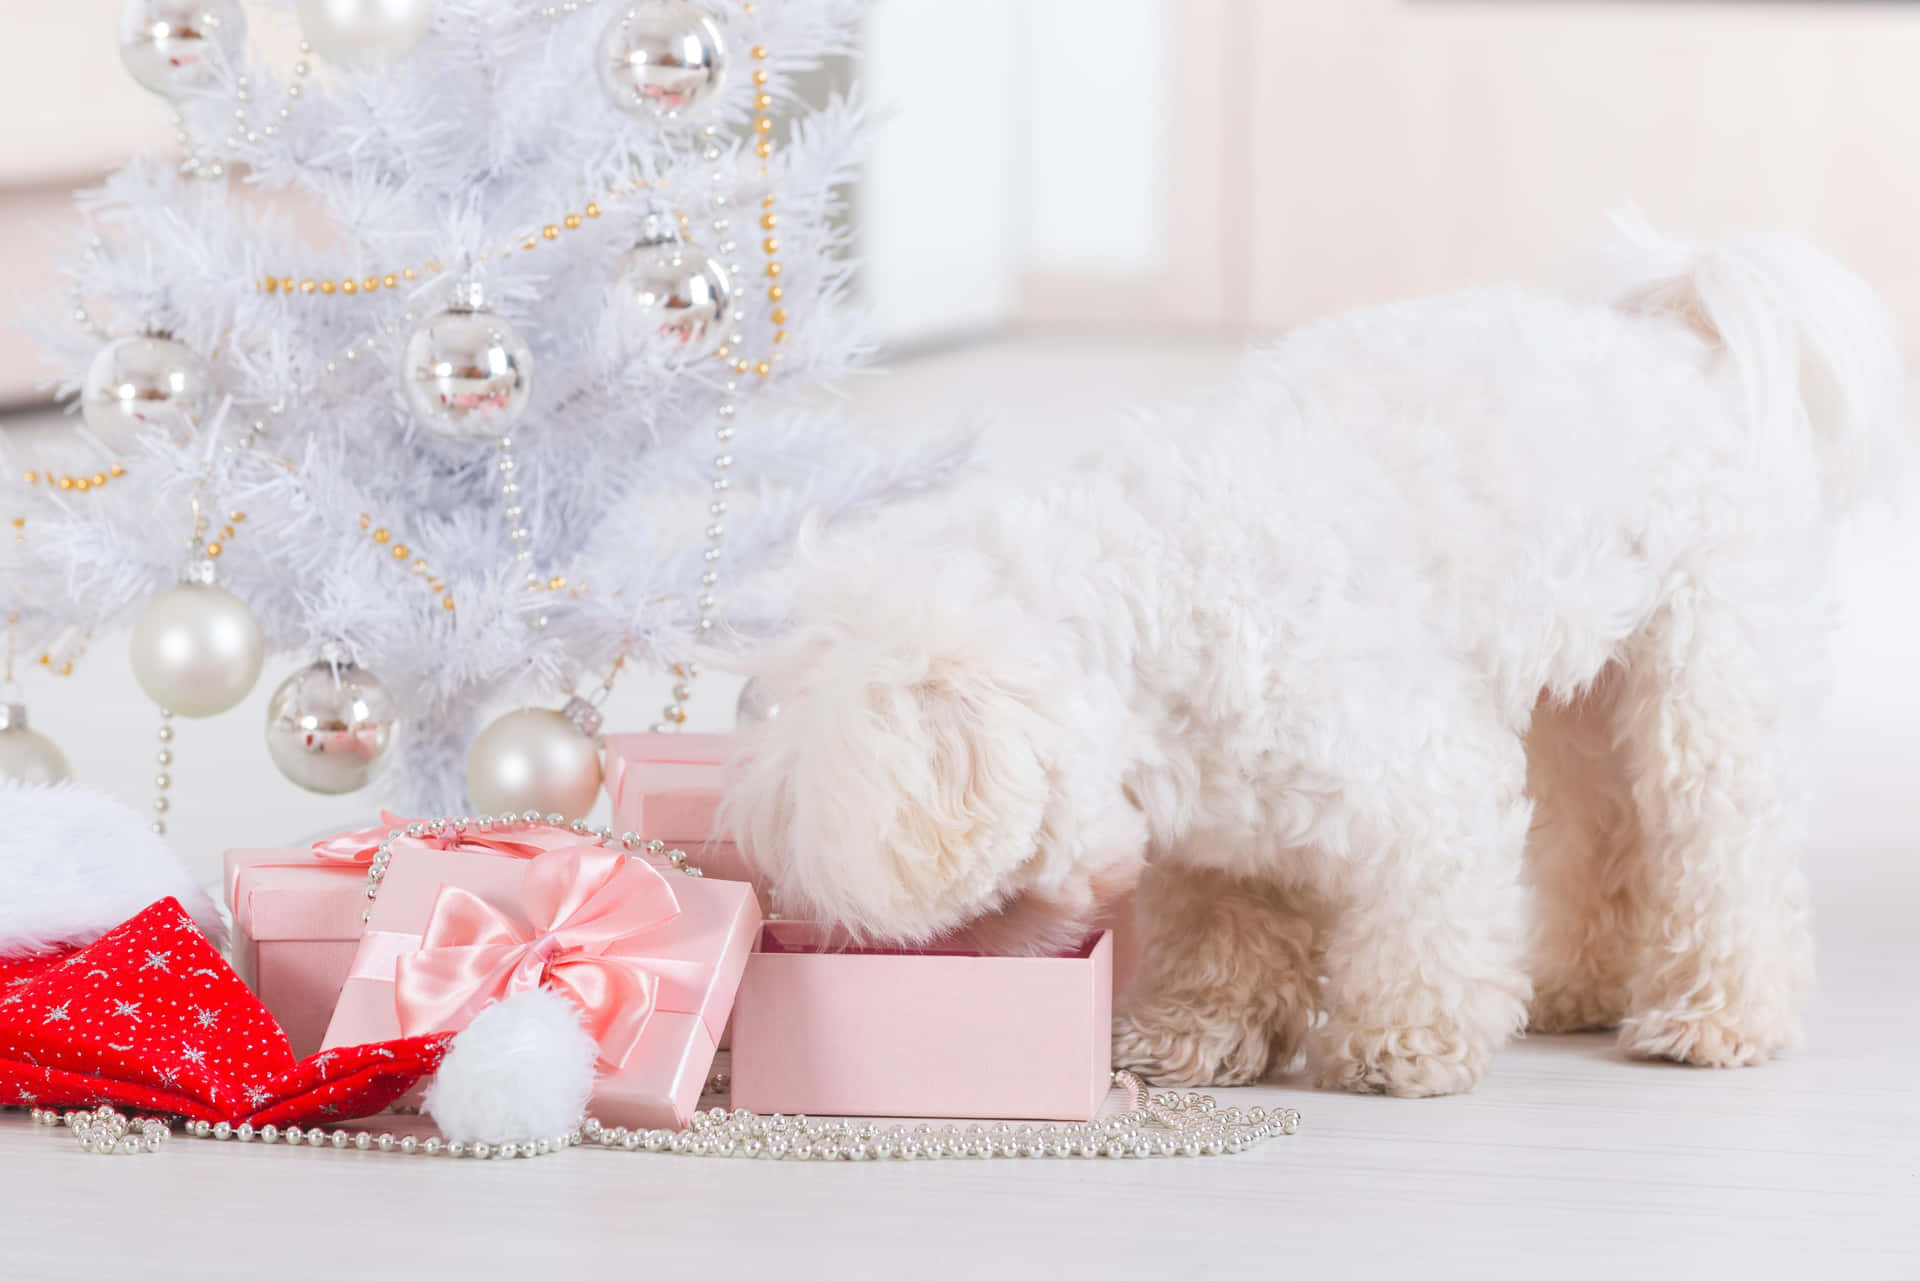 Imagemde Um Poodle Abrindo Presentes De Natal Para Colocar Como Papel De Parede Em Computador Ou Celular.